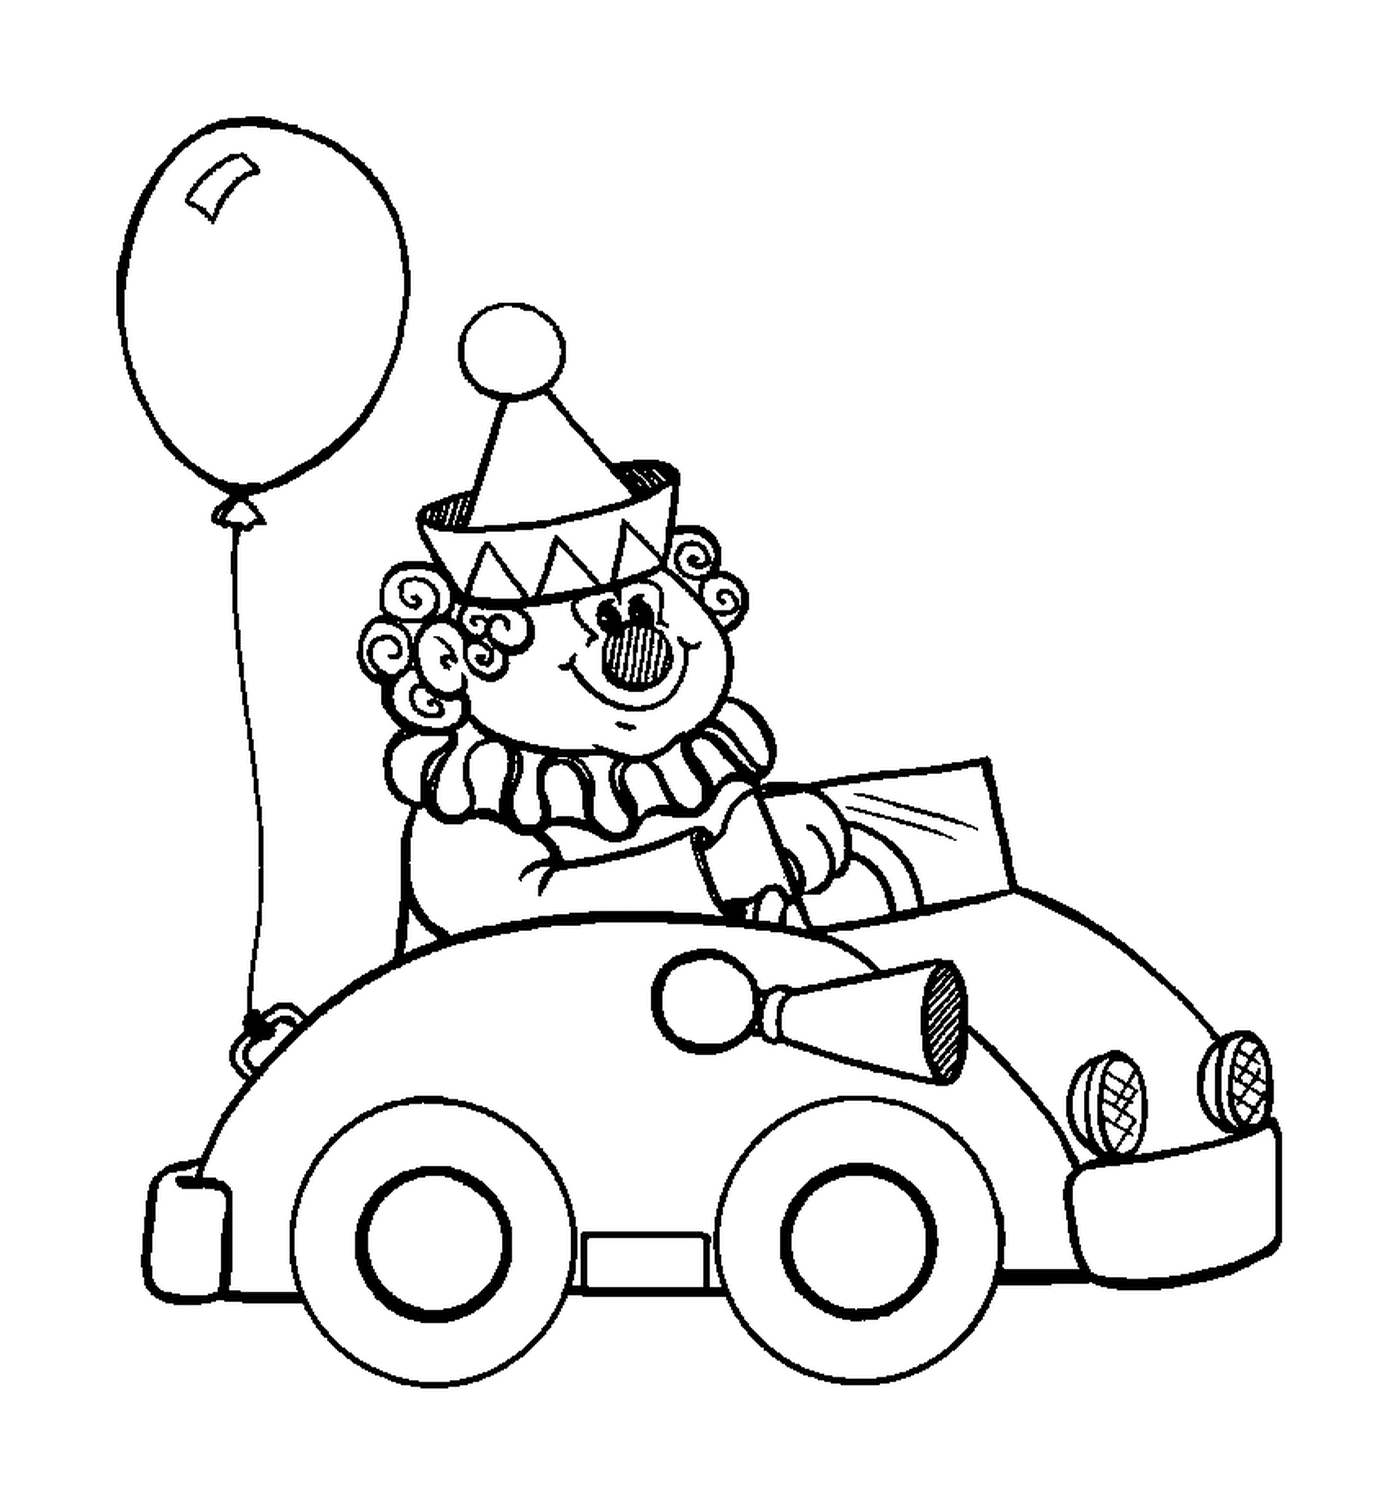  Un clown in macchina per il circo 